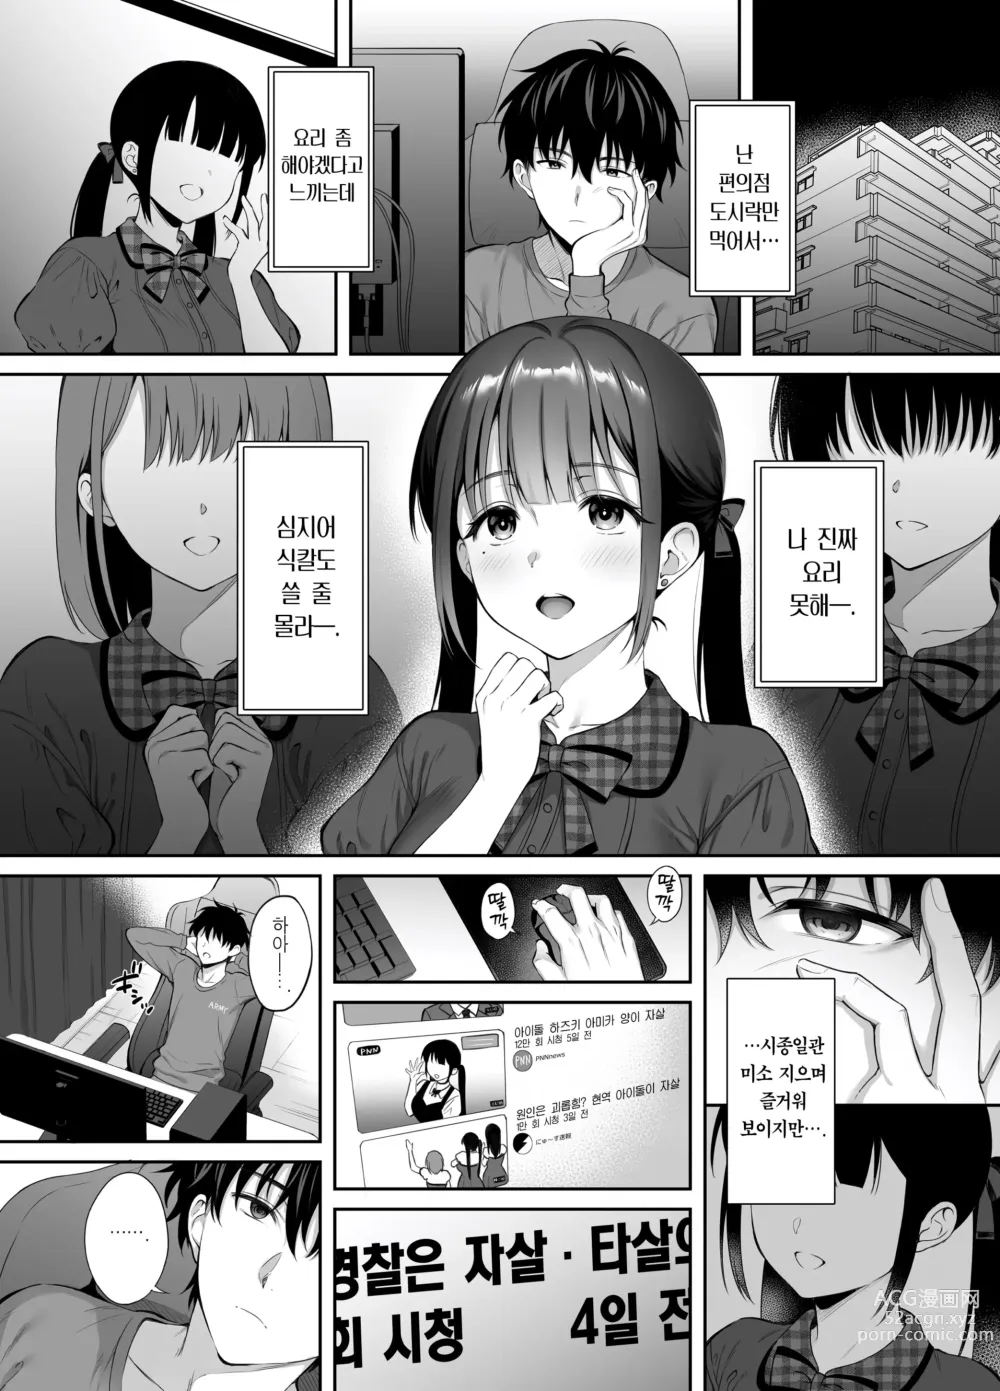 Page 8 of doujinshi 폐허에서 지뢰녀랑 밤새 질내사정 섹스한 이야기 2